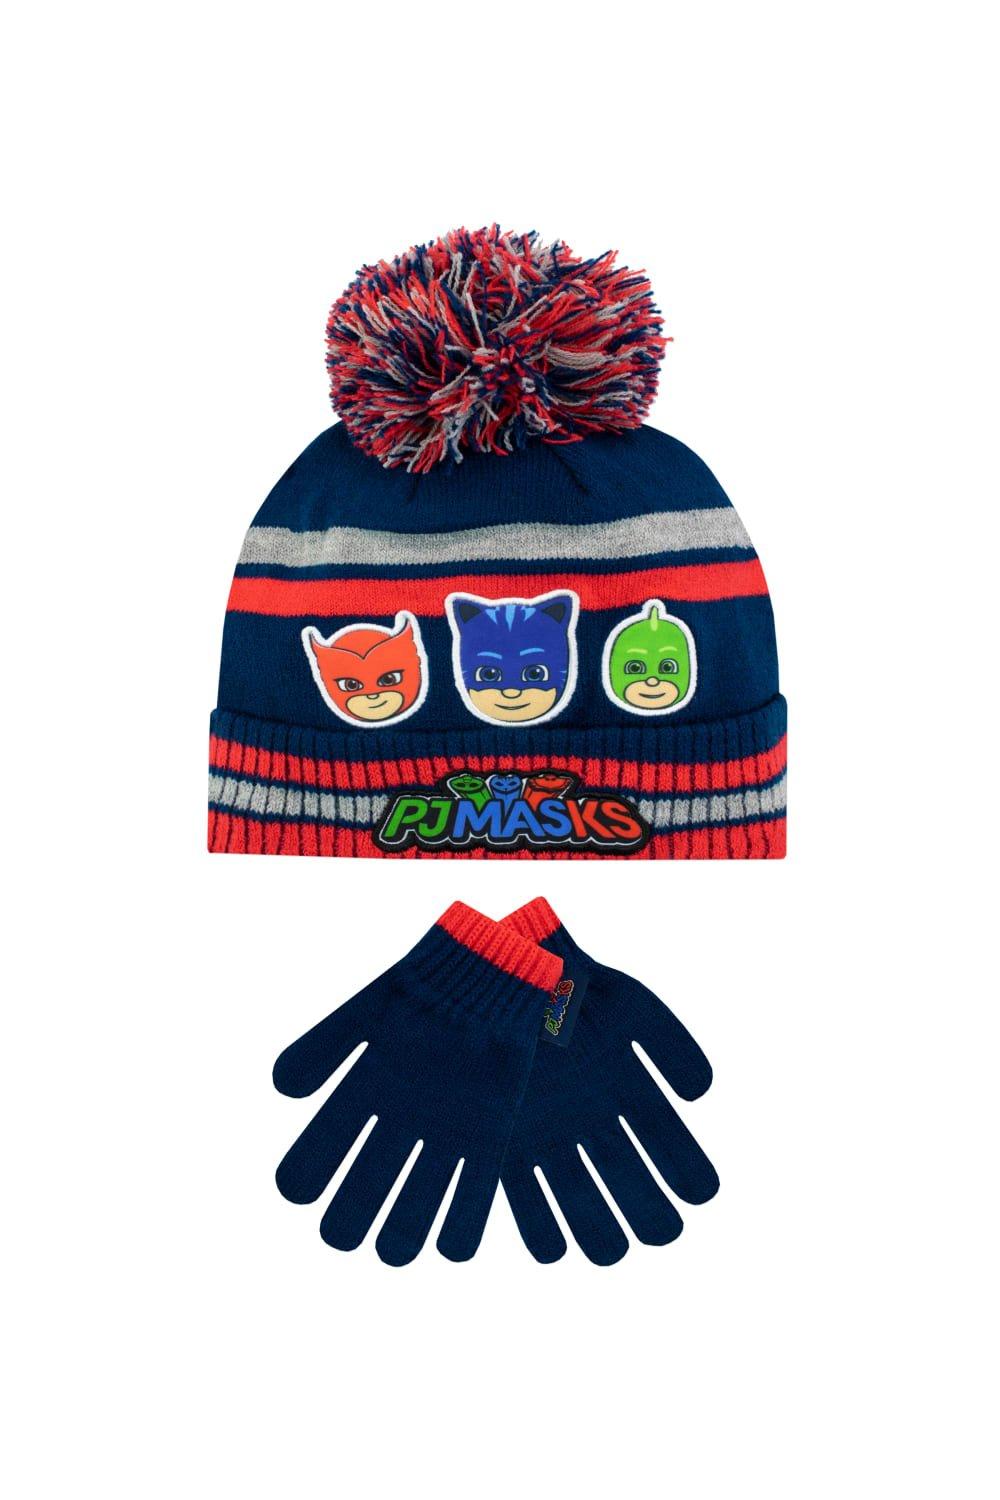 Детский комплект шапки и перчаток PJ Masks, синий разноцветная плюшевая шапка унисекс для взрослых праздничная рождественская шапка шапка с помпоном для рождественской вечеринки